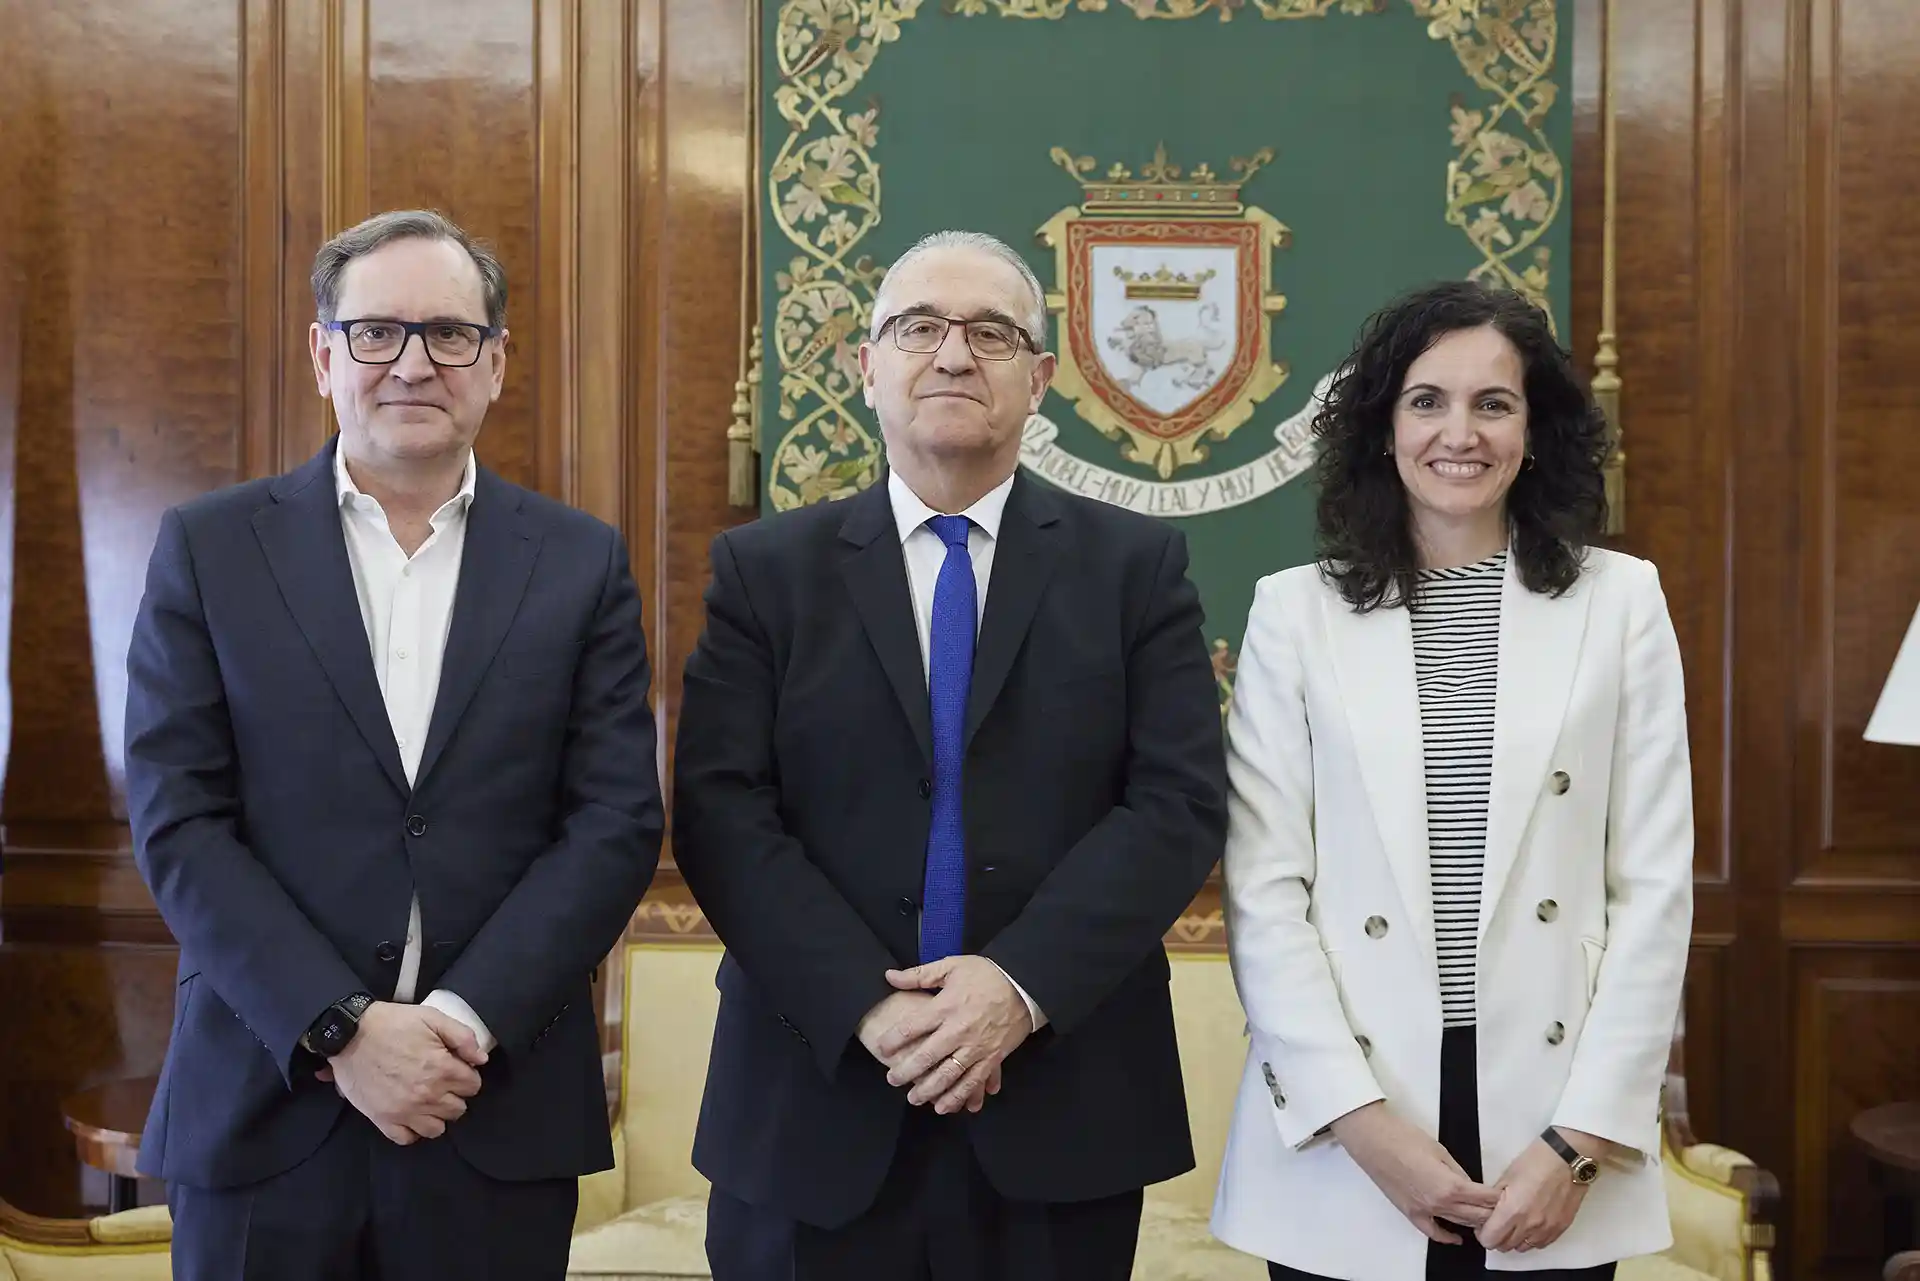 El Ayuntamiento de Pamplona y la Universidad de Navarra colaborarán para desarrollar proyectos alineados con los objetivos de la Agenda Urbana 2030